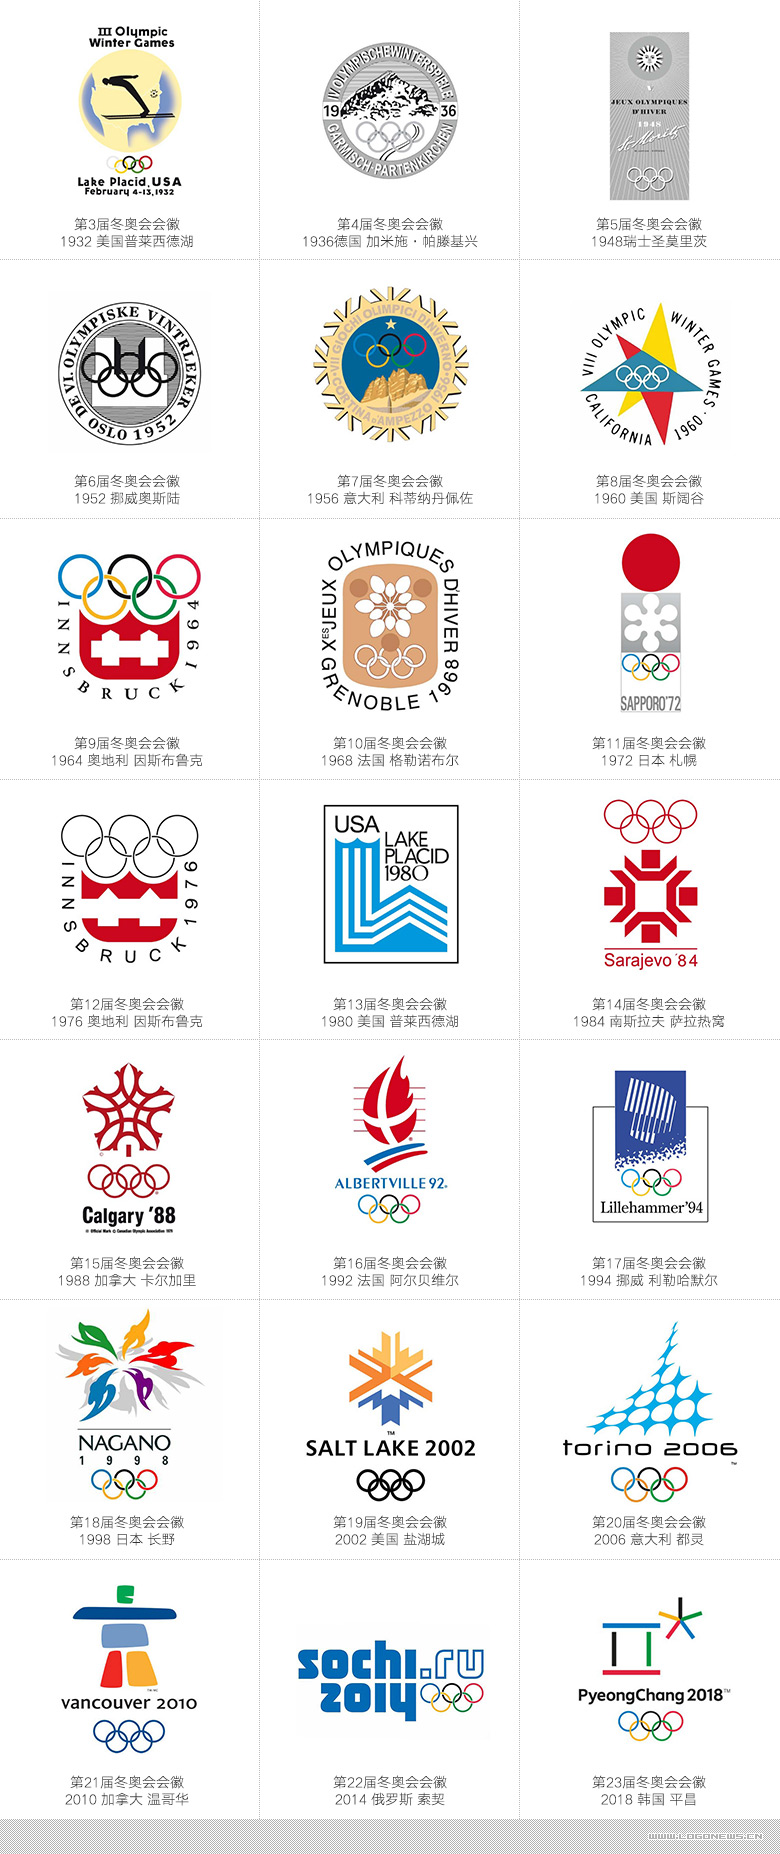 全球征集2022年冬奥会及冬残奥会会徽设计方案